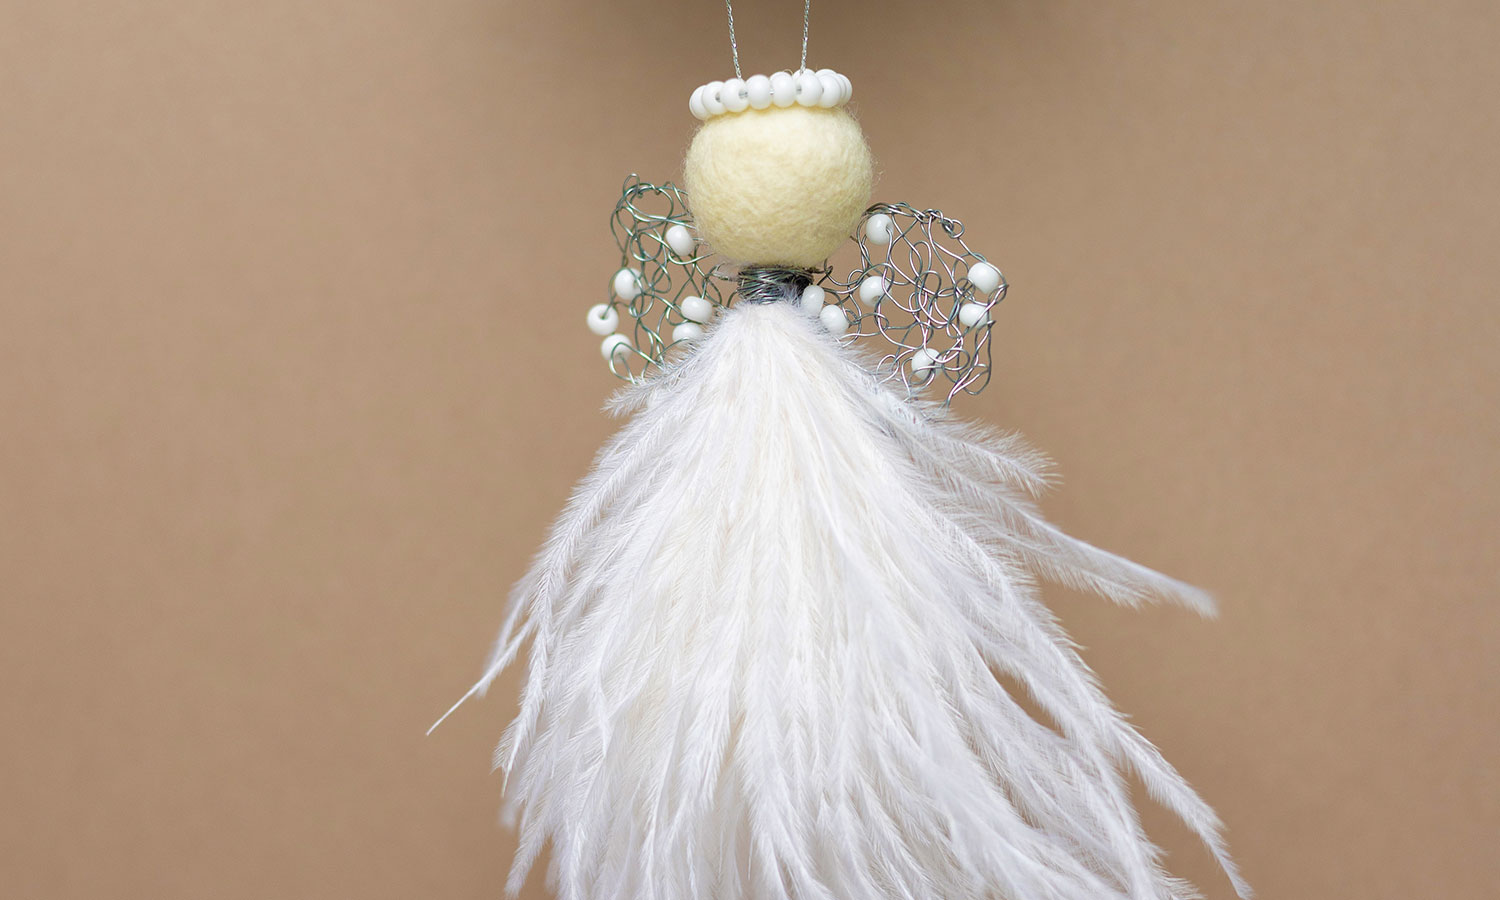 Julegaver med mening: Juleengel med hvite perler. Foto.